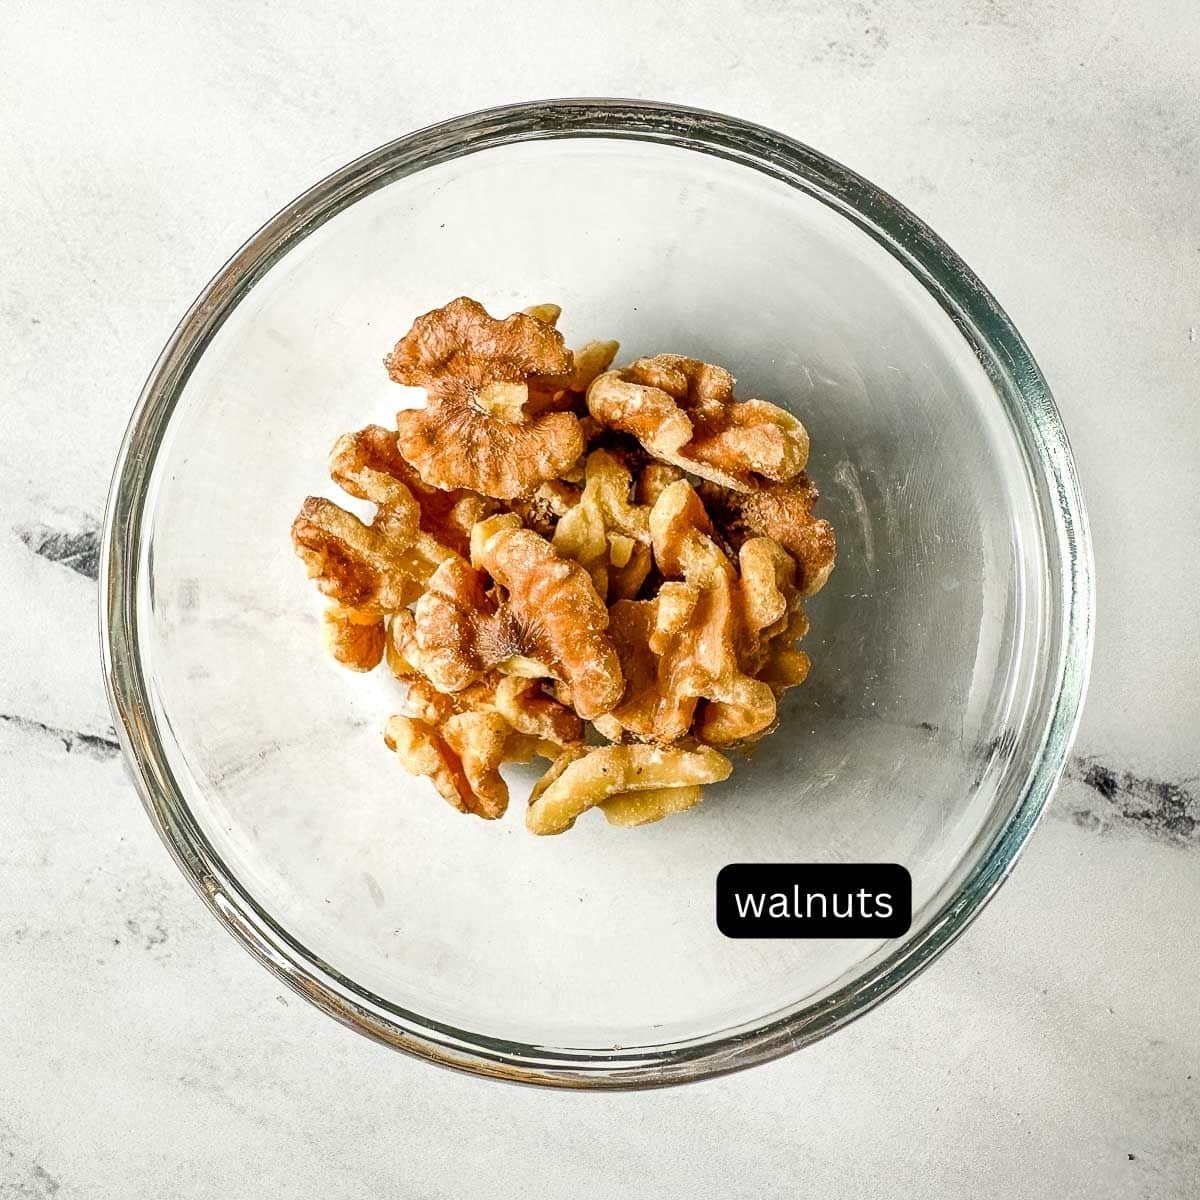 walnuts in a glass dish.